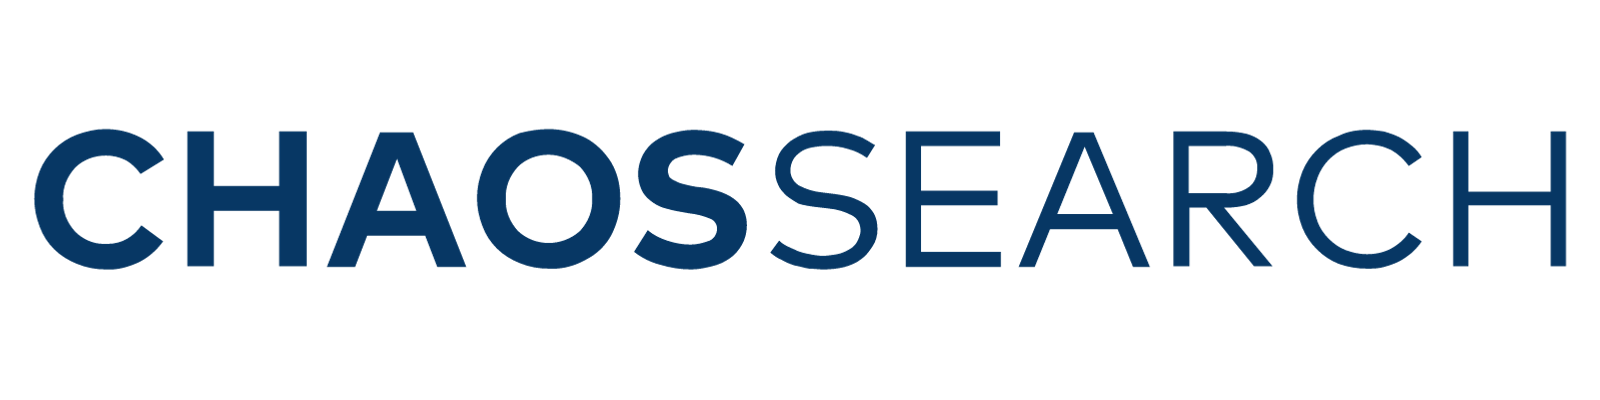 ChaosSearch logo